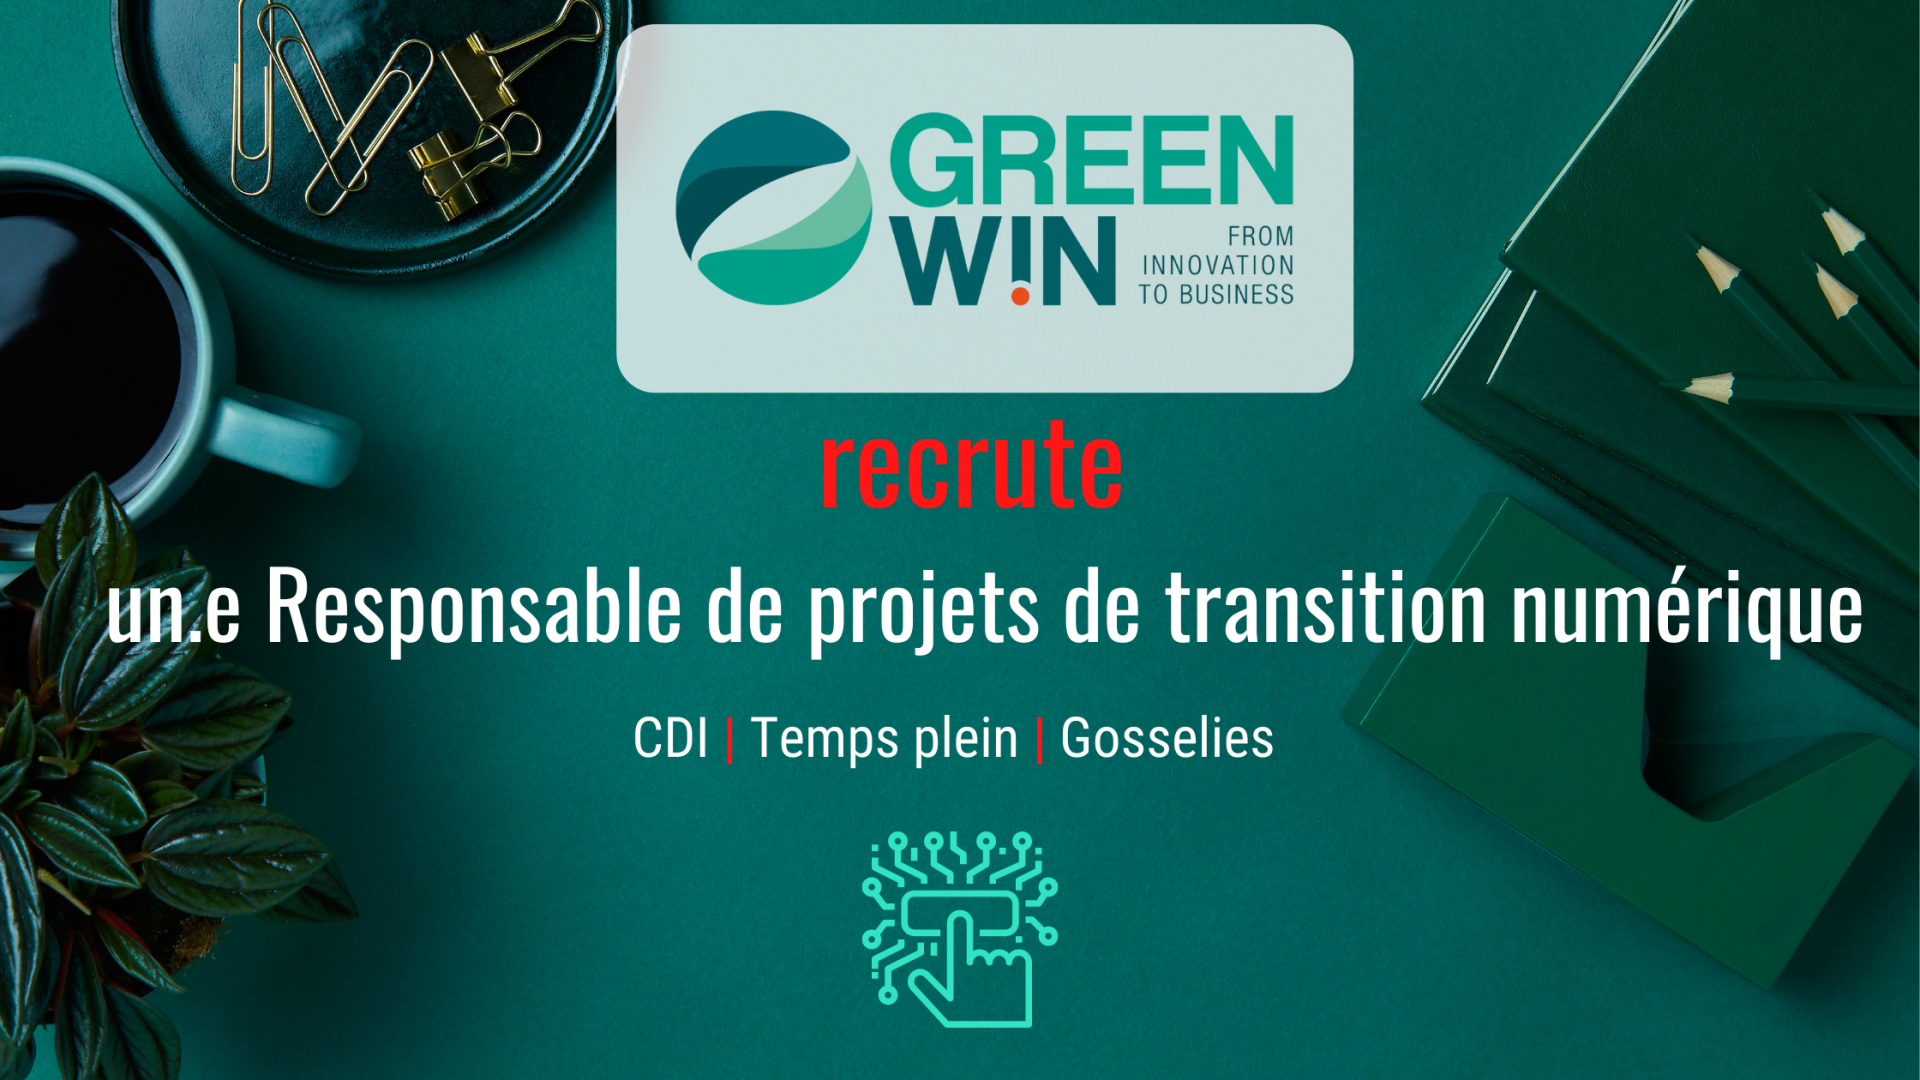 GreenWin recrute un.e Responsable de projets de transition numérique